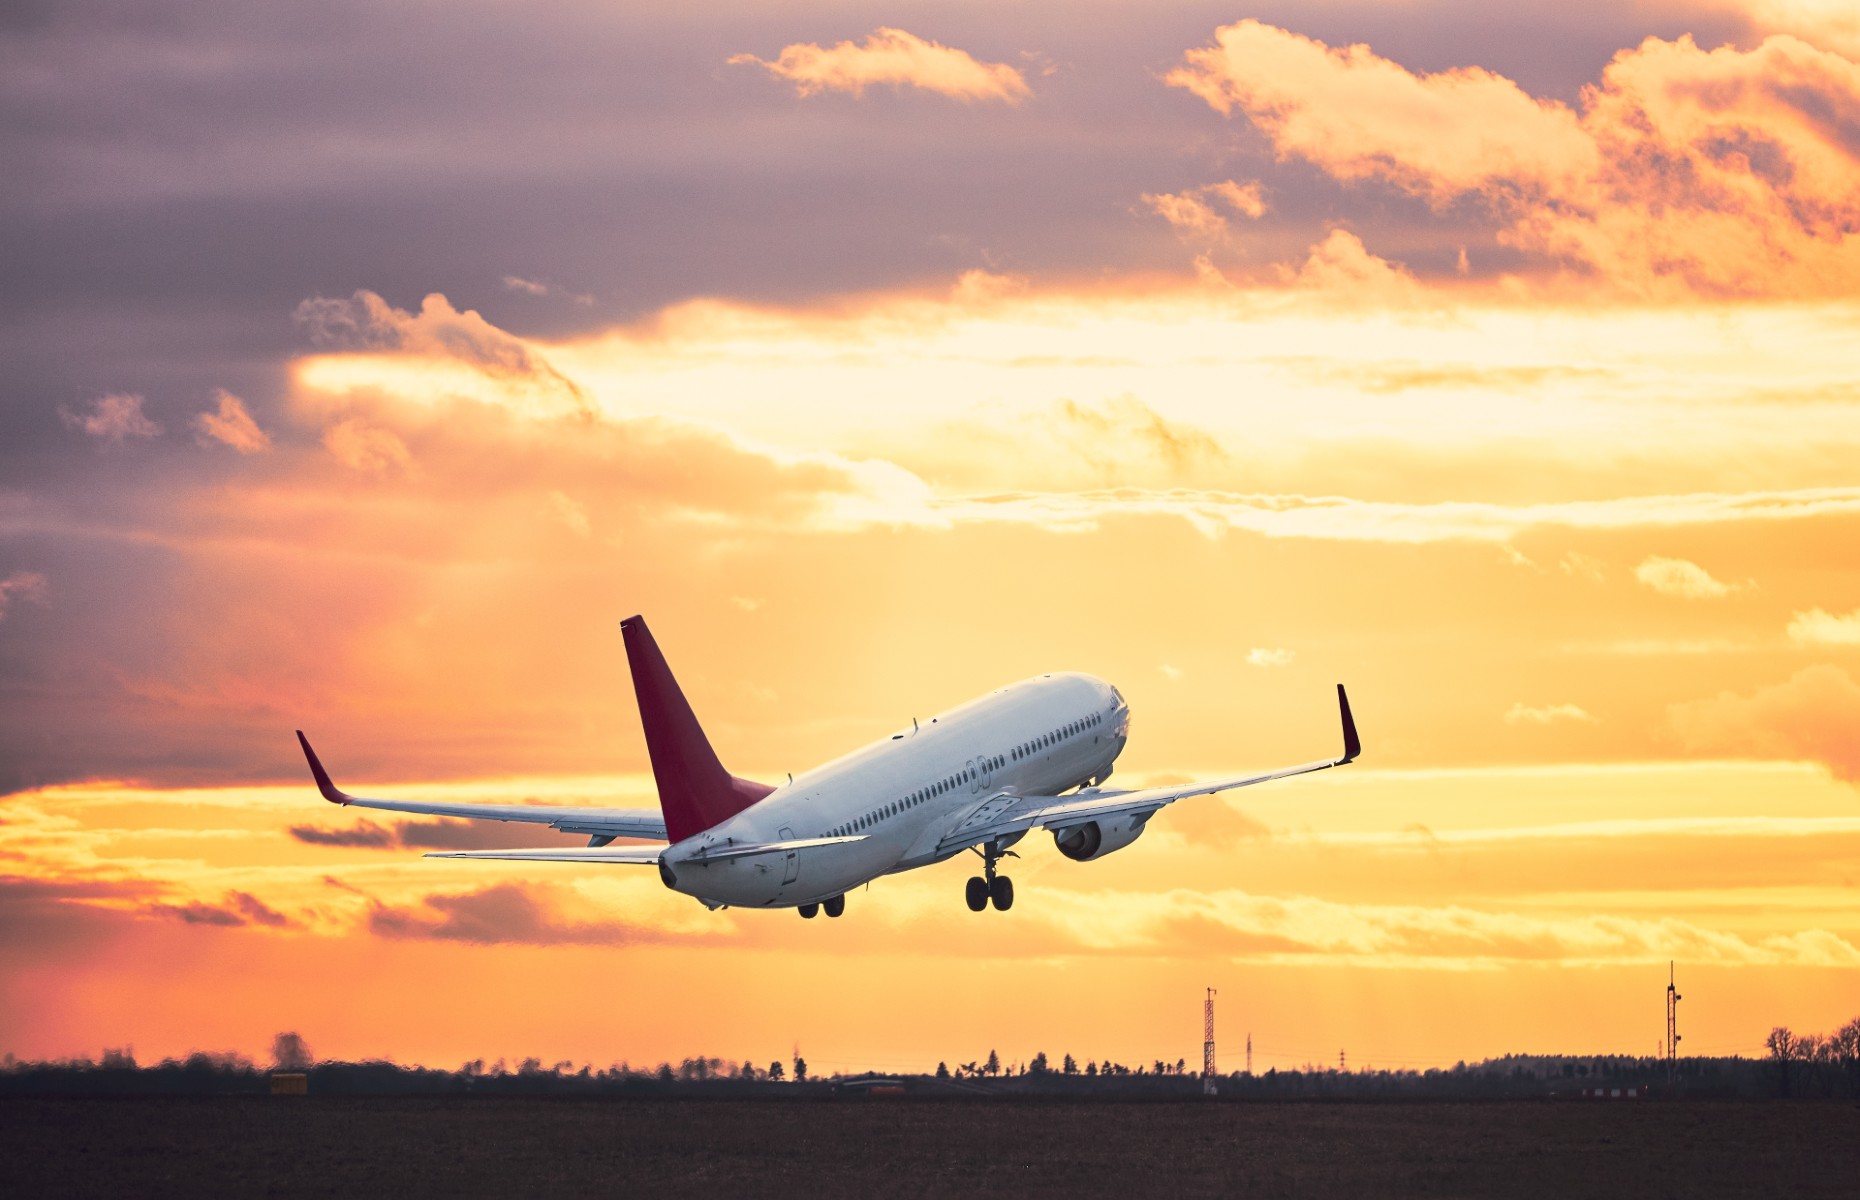 Plane taking off (Image: Jaromir Chalabala/Shutterstock)